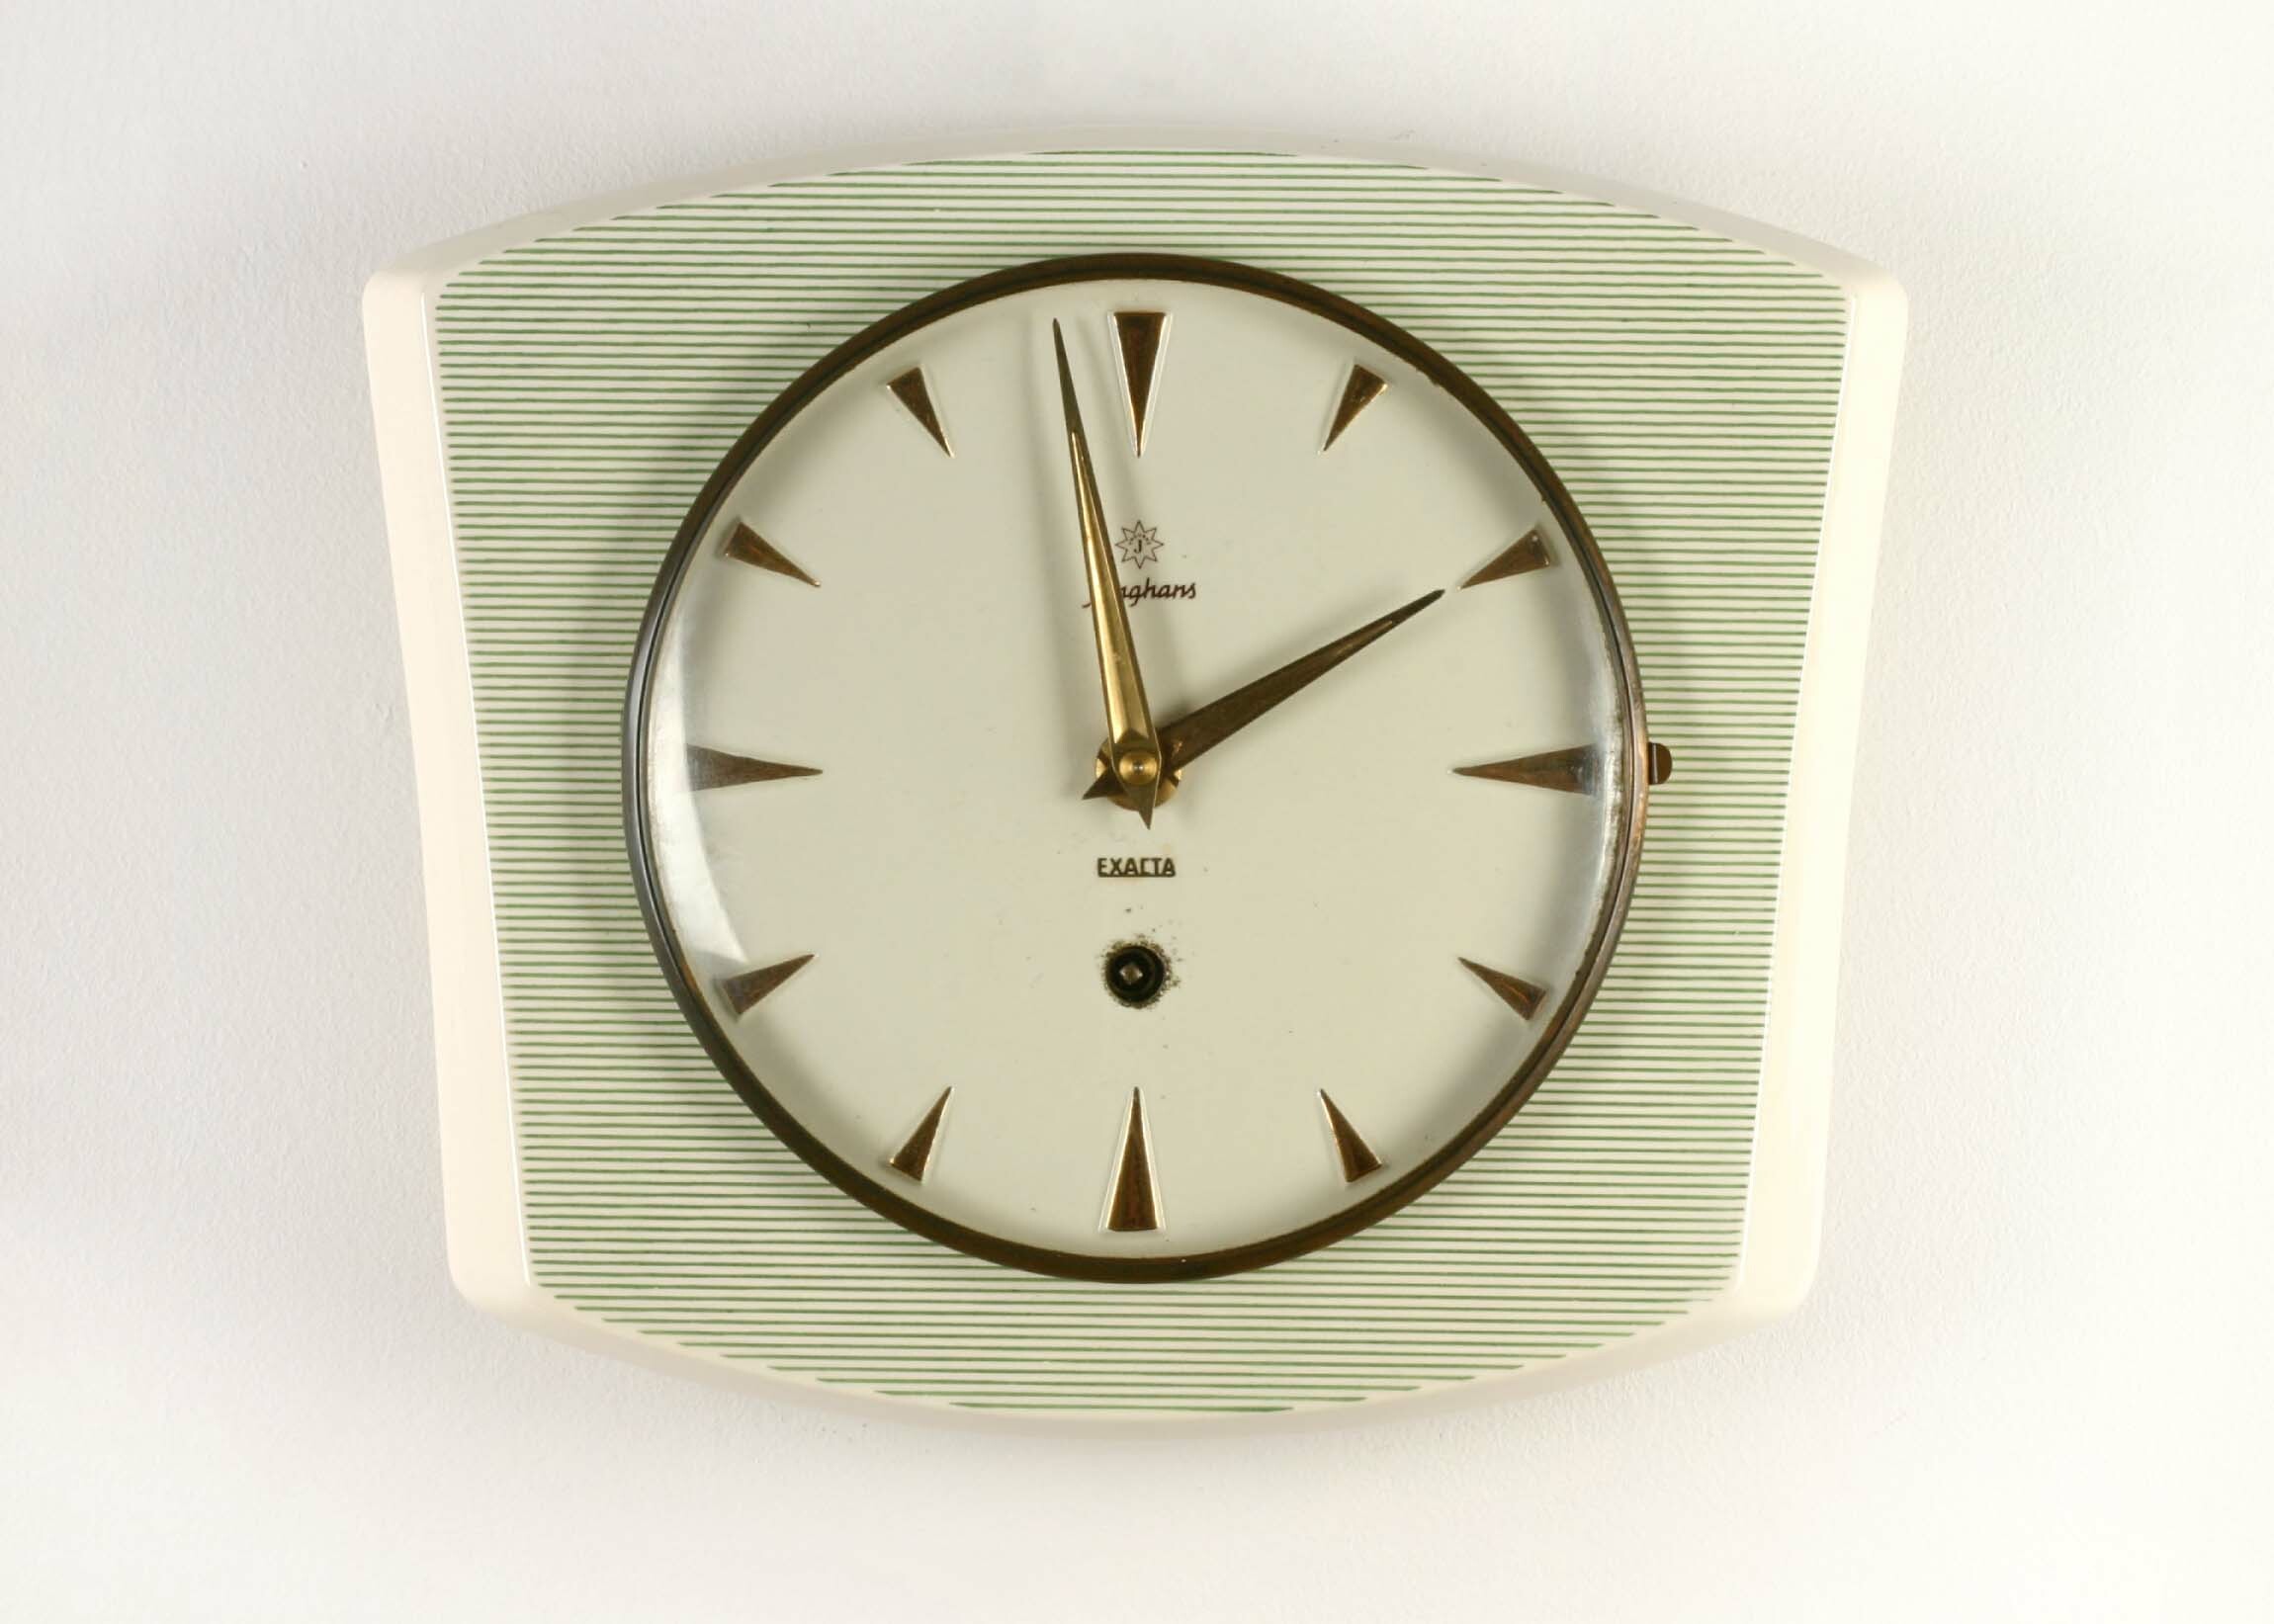 Küchenuhr "Exacta", Junghans, Schramberg, um 1960 (Deutsches Uhrenmuseum CC BY-SA)